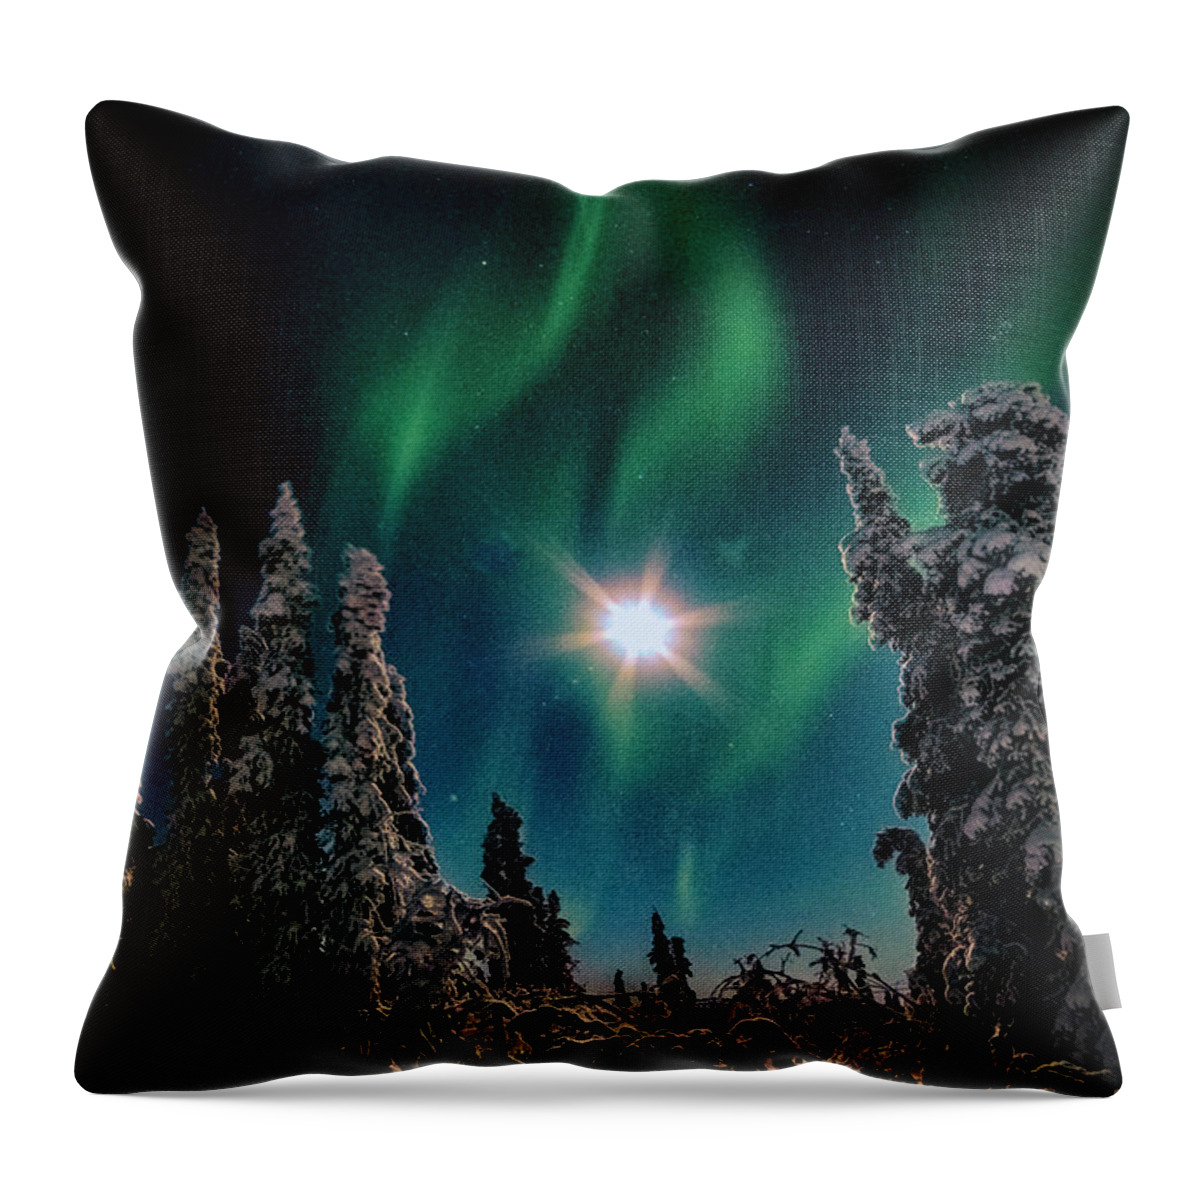 Alaska Throw Pillow featuring the photograph Neon Flame #1 by Robert Fawcett